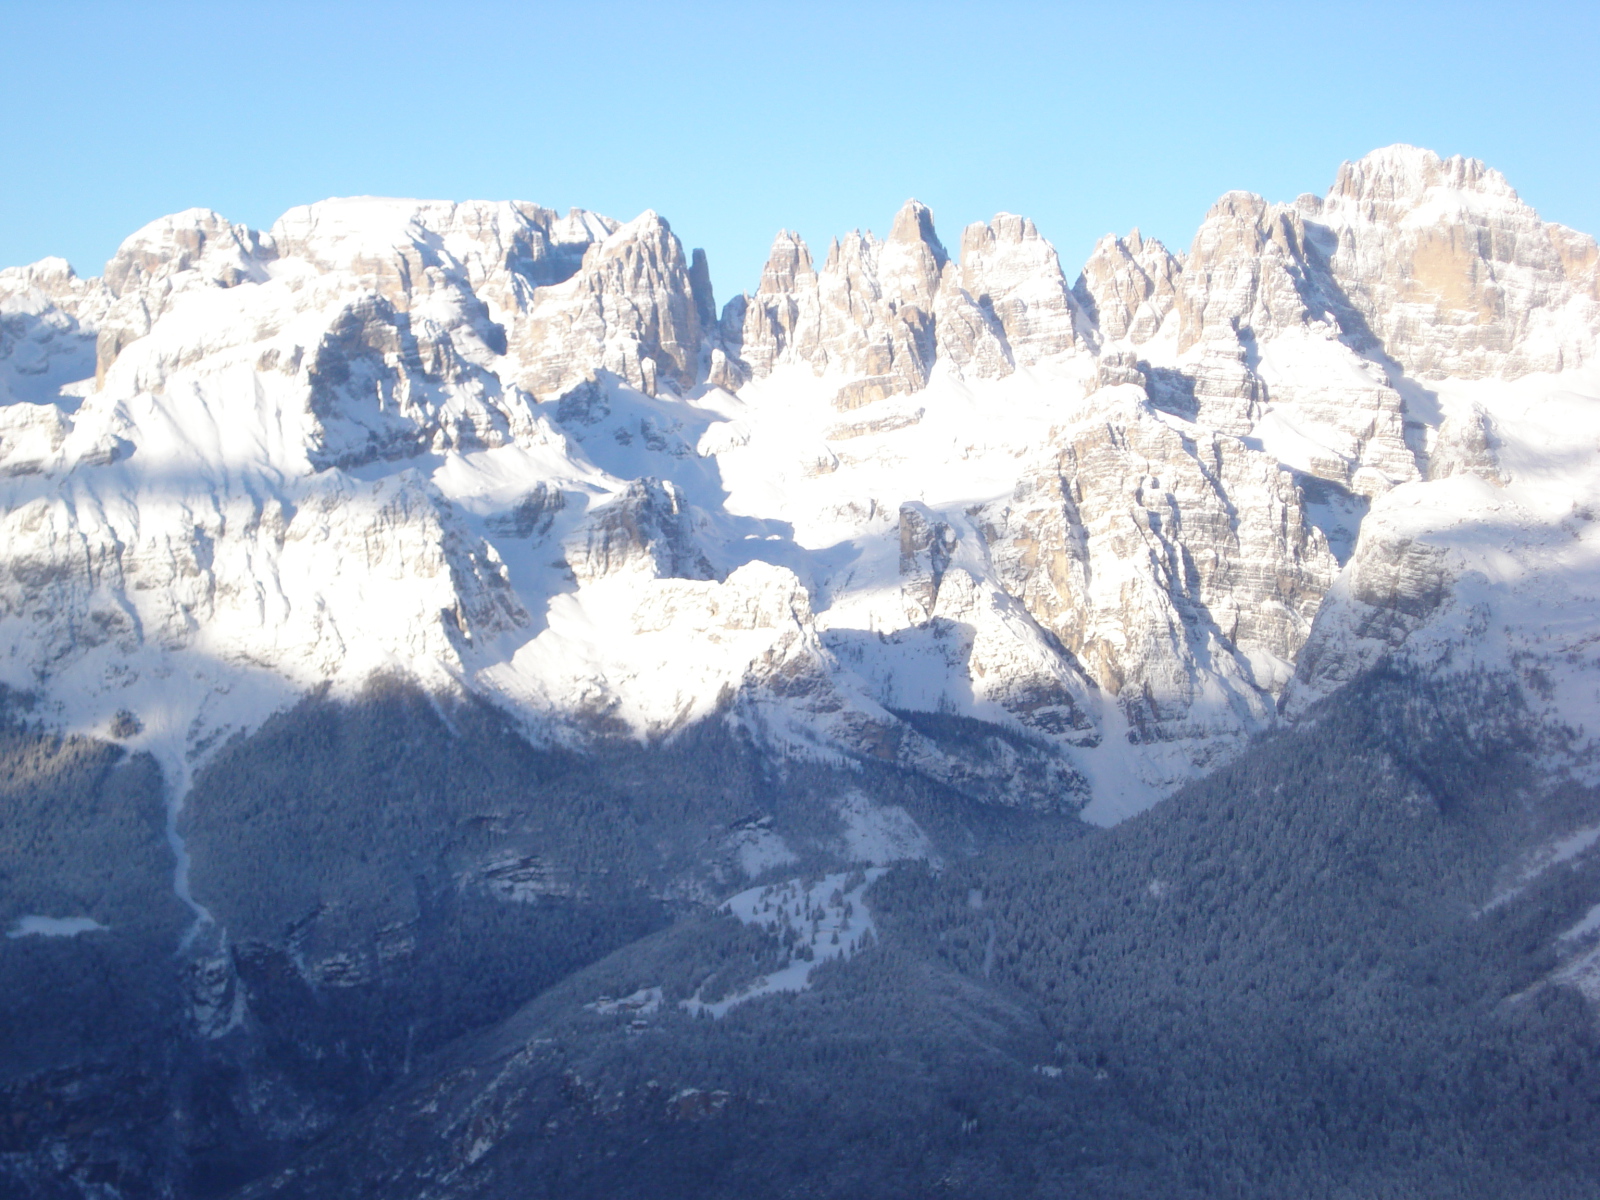 Central-Part-or-Branta-Dolomites.JPG